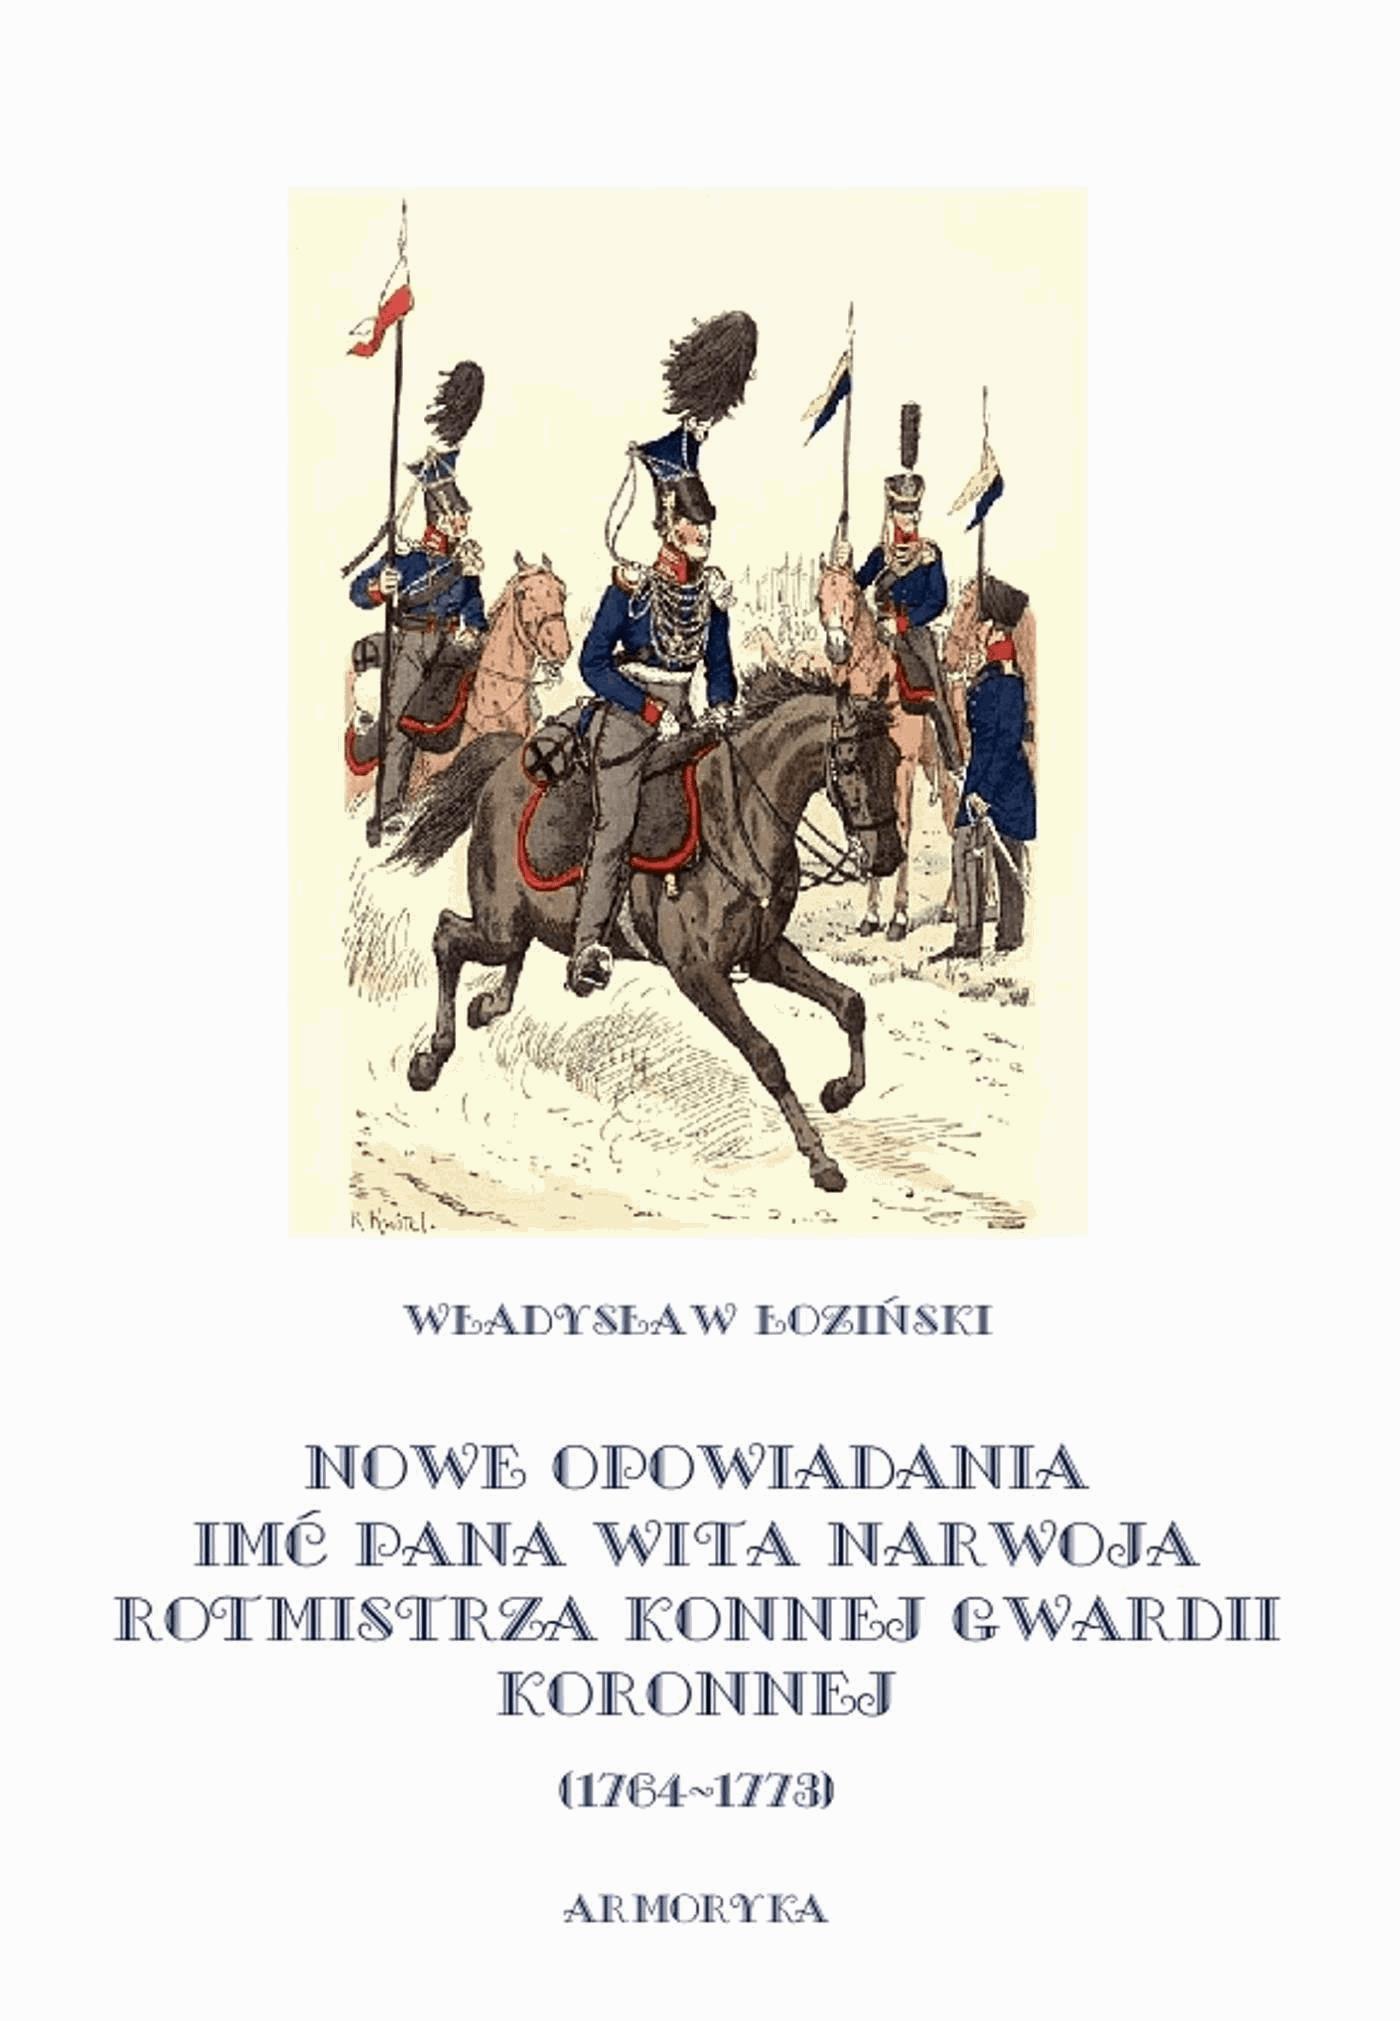 Okładka:Nowe opowiadania imć pana Wita Narwoja, rotmistrza konnej gwardii koronnej 1764-1773 